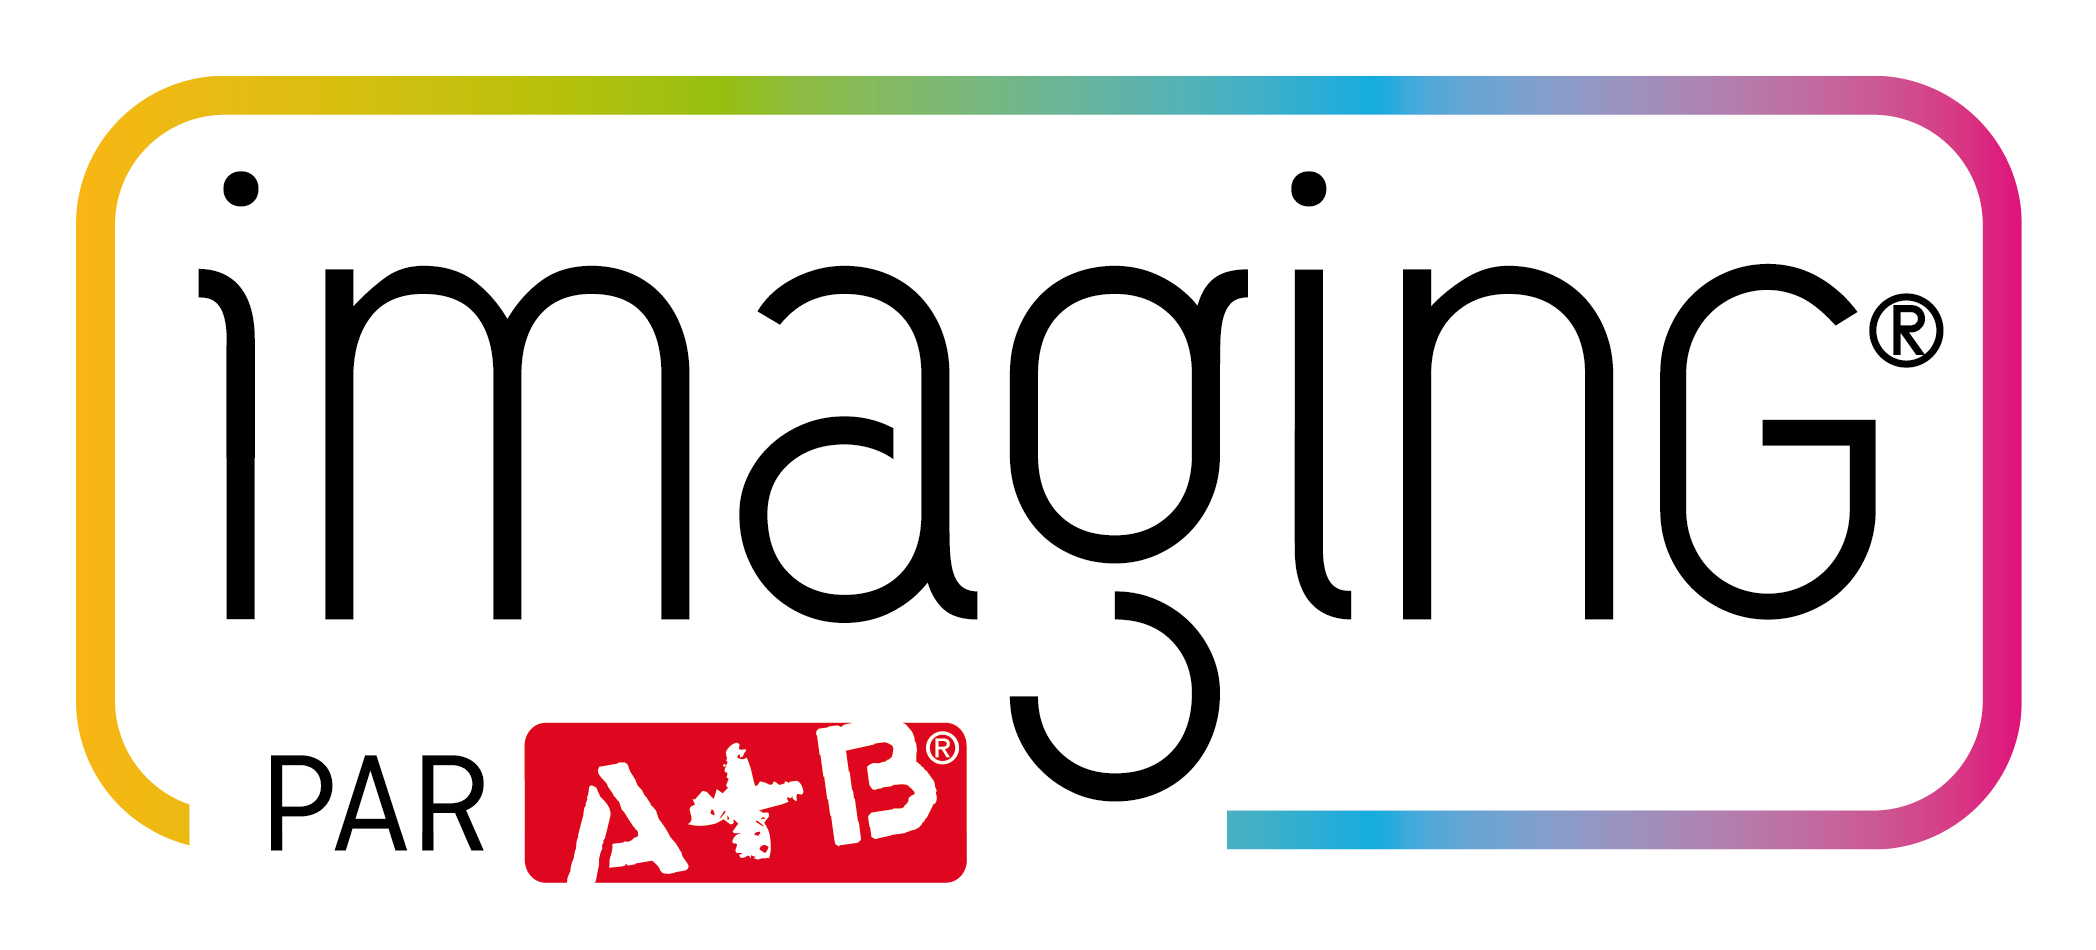 A+B Imaging